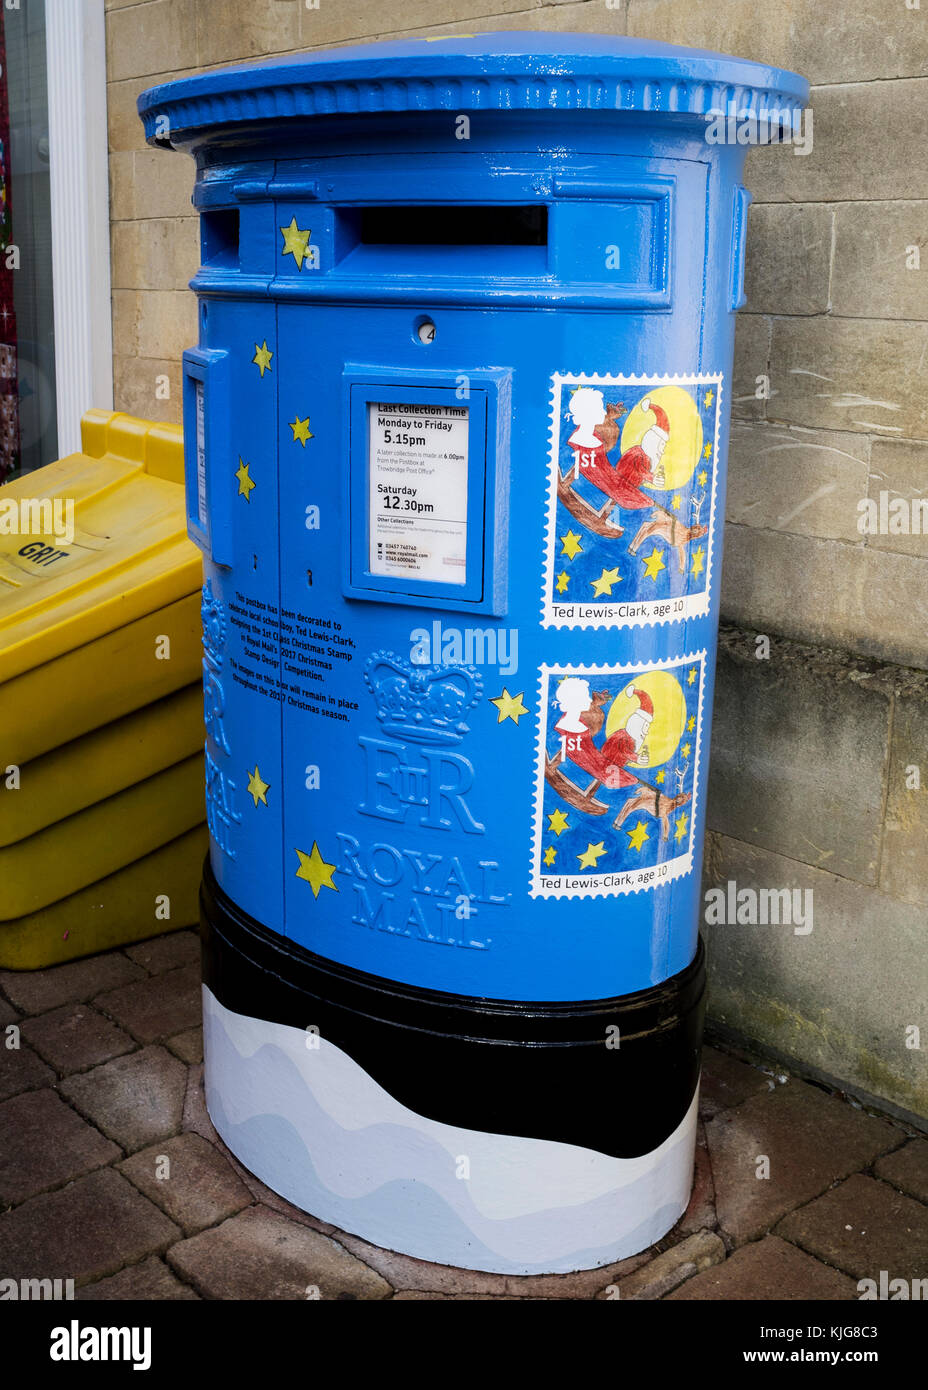 Royal Mail spezielle blaue Briefkasten, eingerichtet zu feiern Frome Schüler Ted Lewis - Clark gewann in diesem Jahr eine Weihnachtsmarke Wettbewerb 2017. Stockfoto